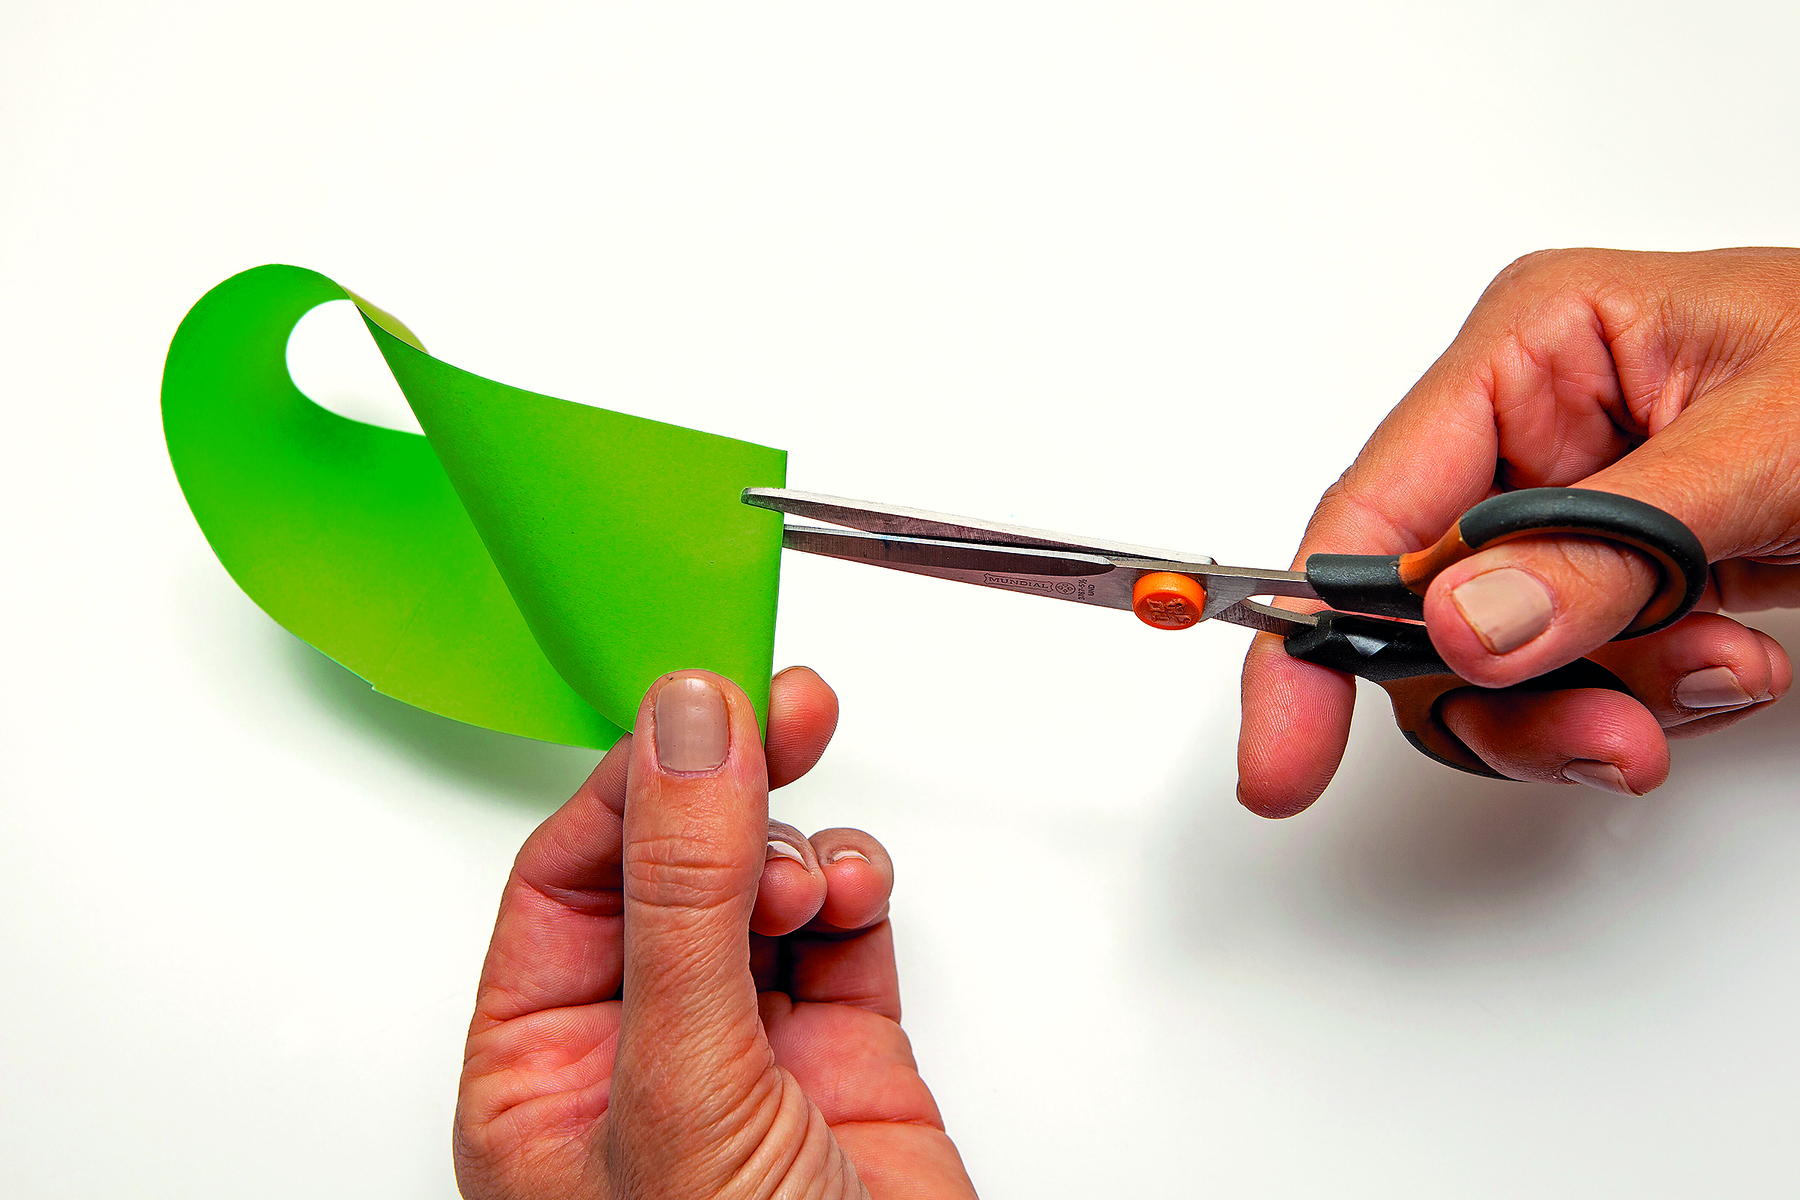 Fotografia. Detalhe de duas mãos cortando parte da fita de papel verde retorcida.